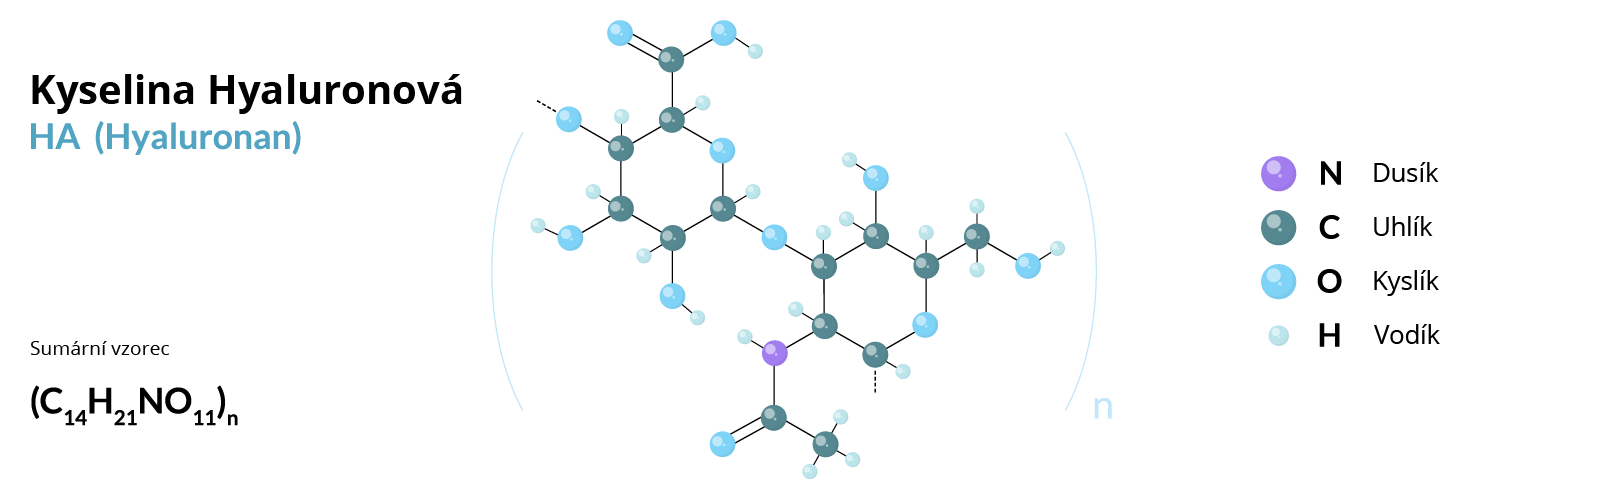 Kyselina hyaluronová - hyaluronát sodný